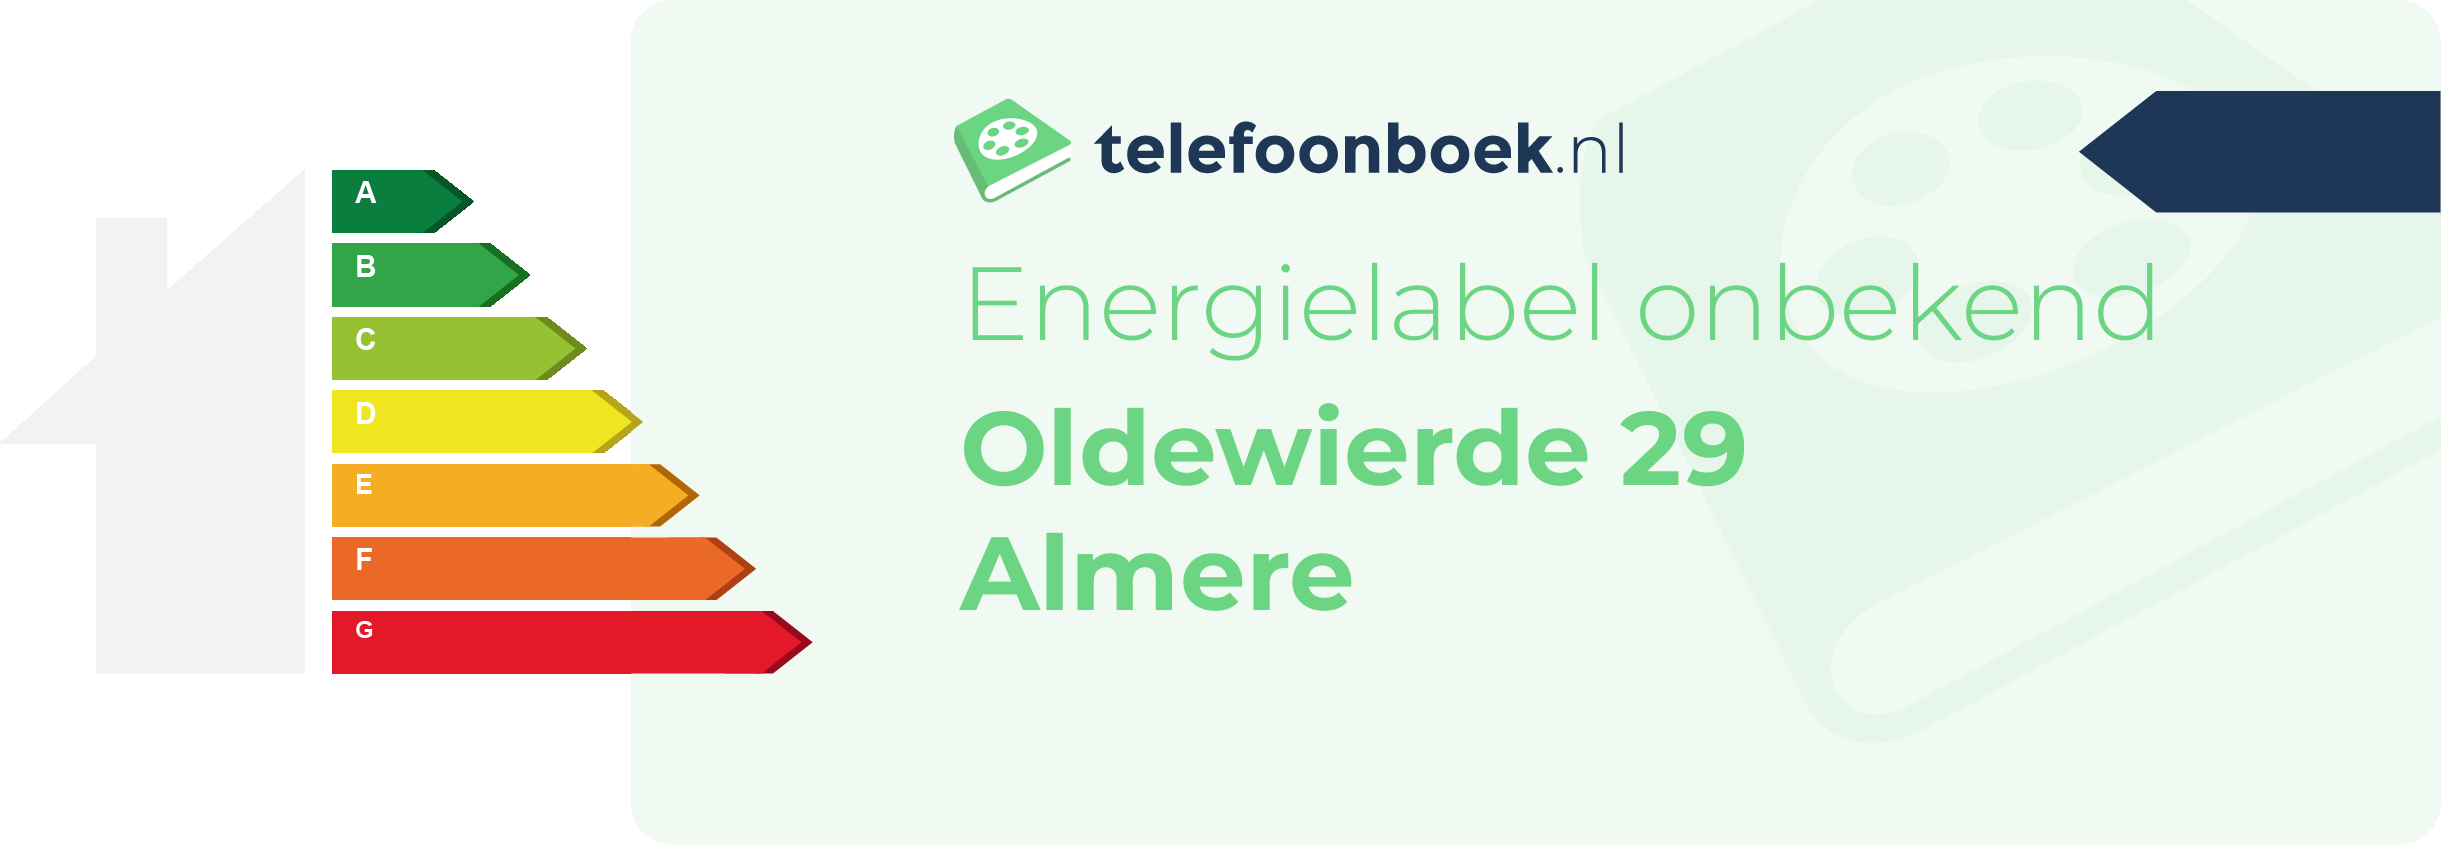 Energielabel Oldewierde 29 Almere